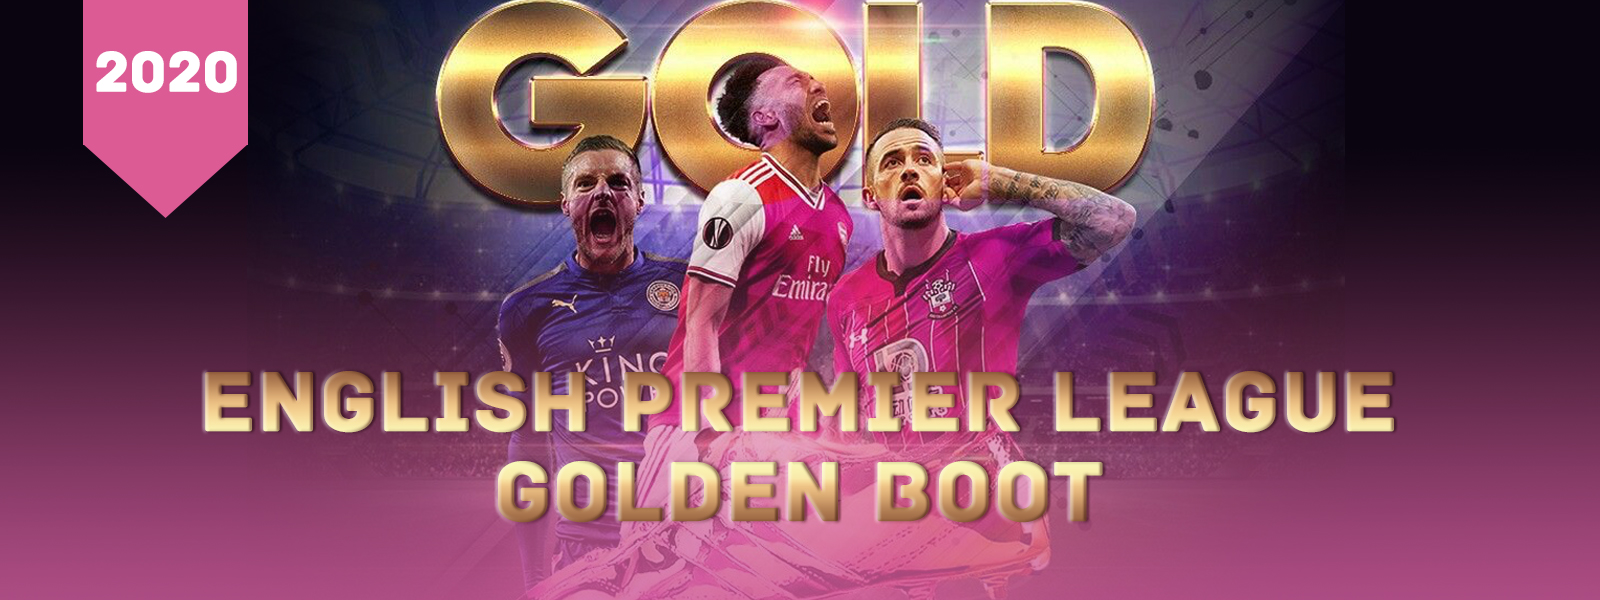 English Premier League Golden Boot